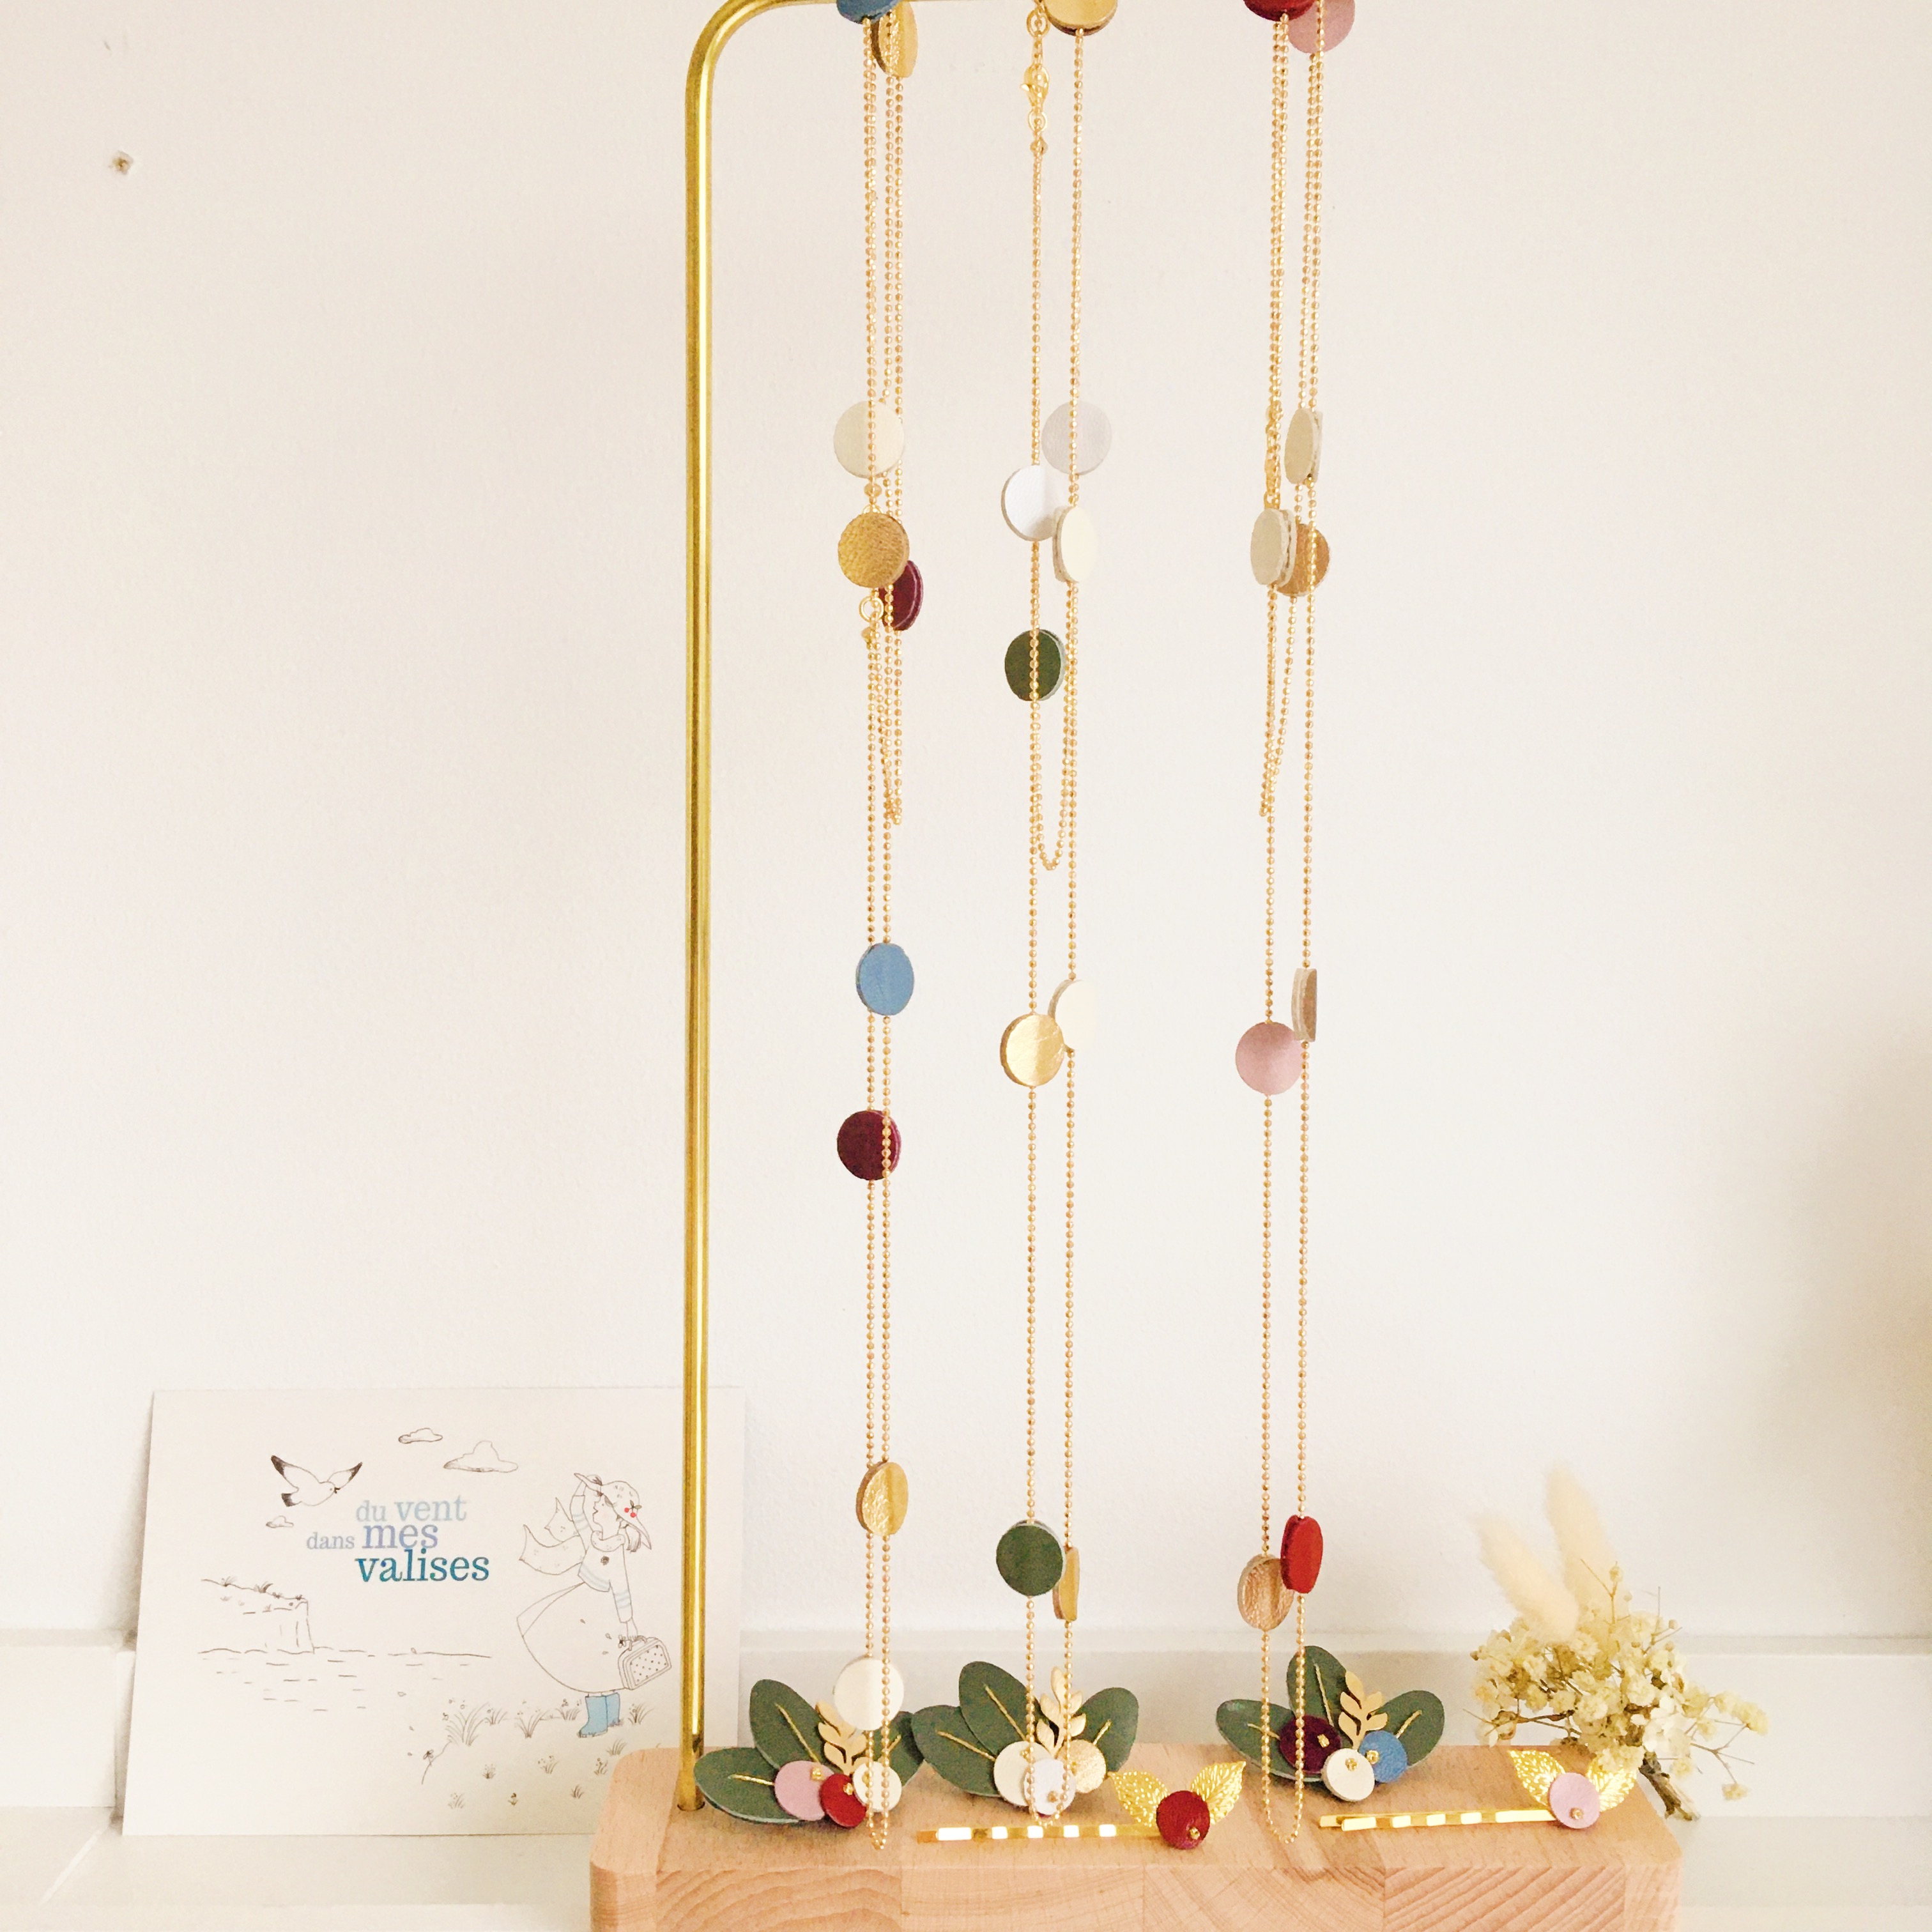 collier sautoir ou double rangée chaîne boule dorée à l'or fin fabrication artisanale française harmonie hiver- du vent dans mes valises